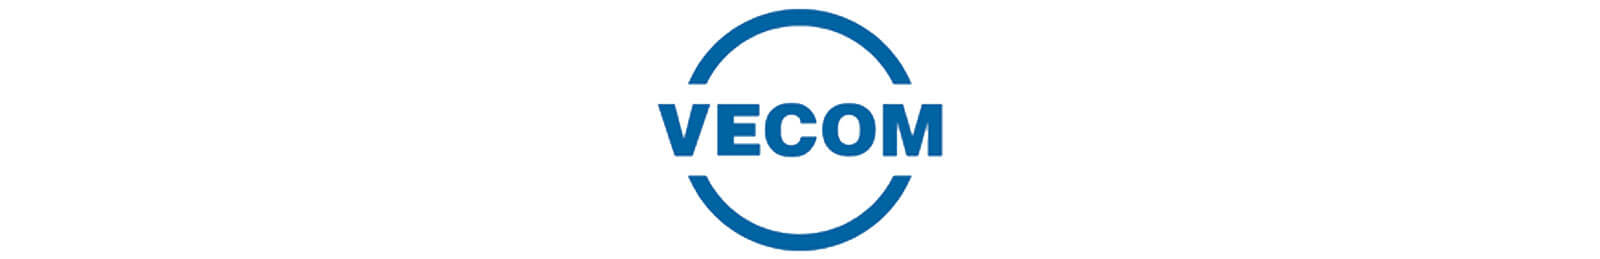 Vecom Group